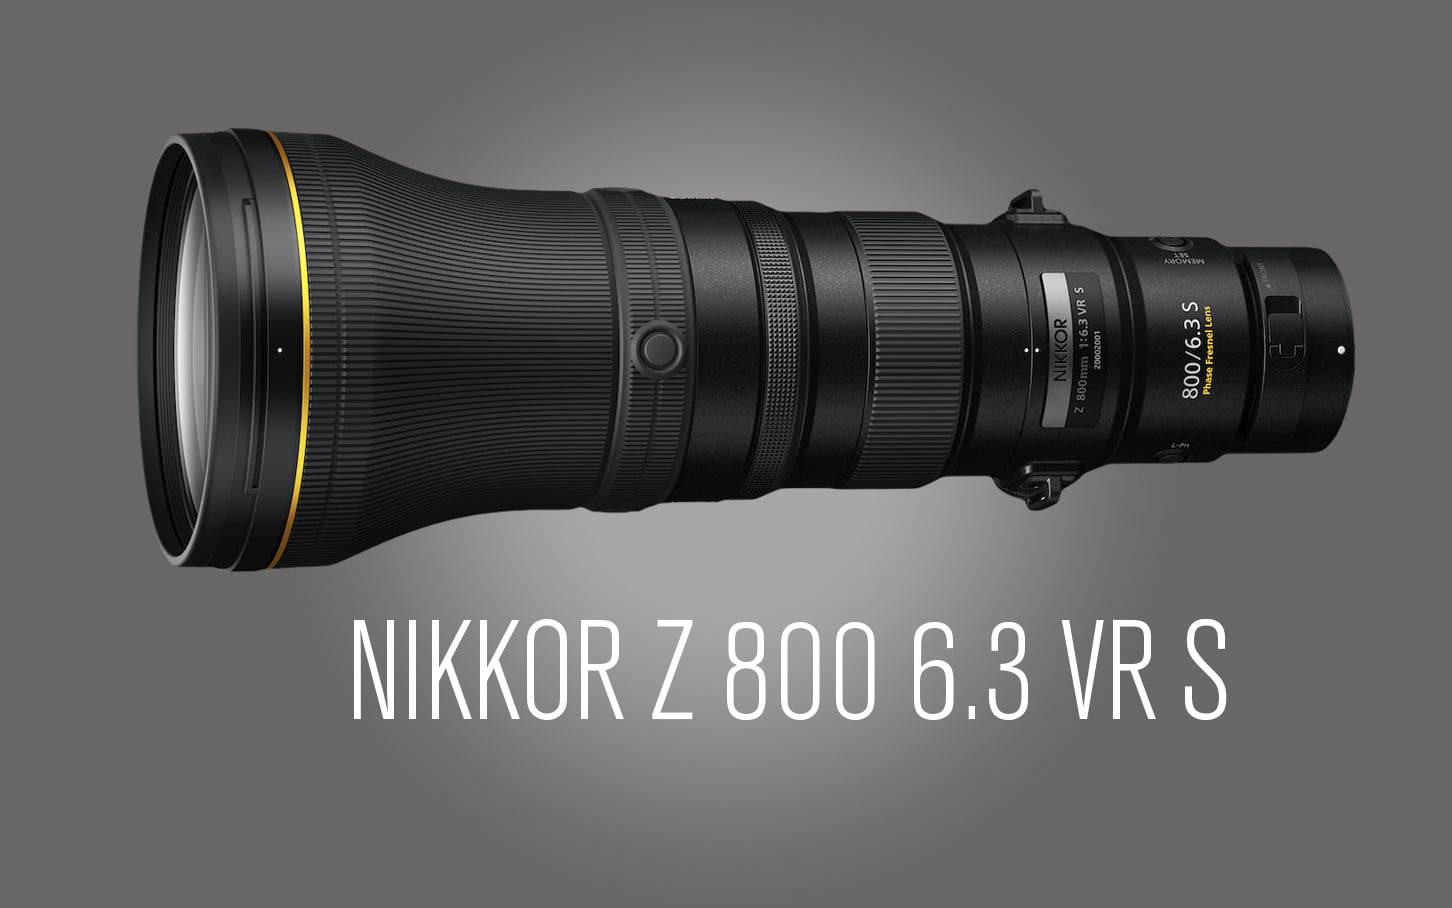 NIKKOR Z 800mm F6.3 VR S  Distribuidor oficial NIKON PRO